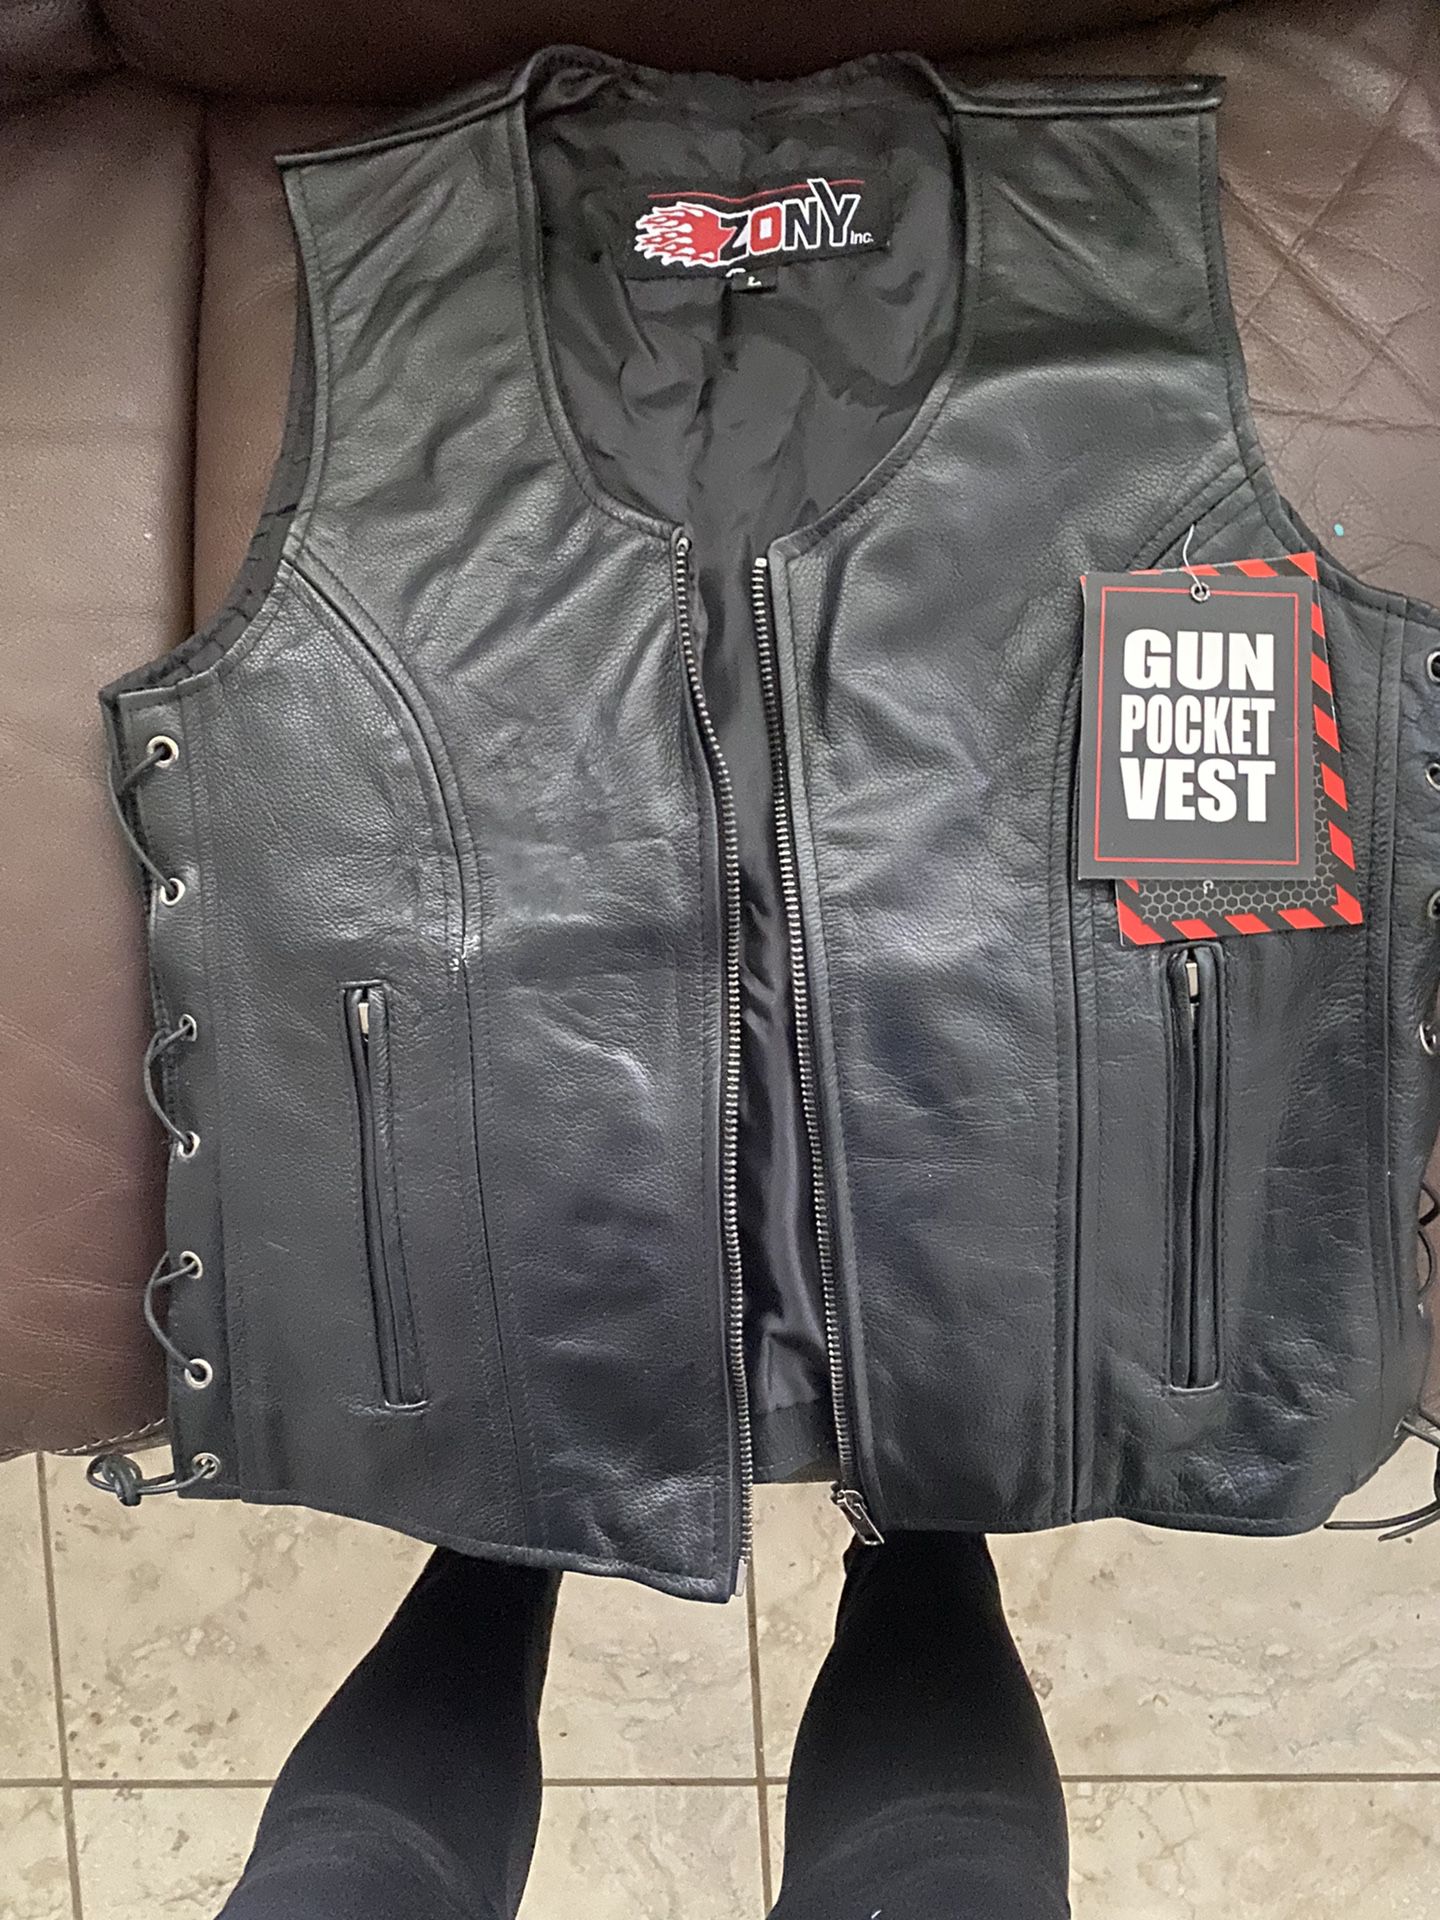 Motocycle vest 